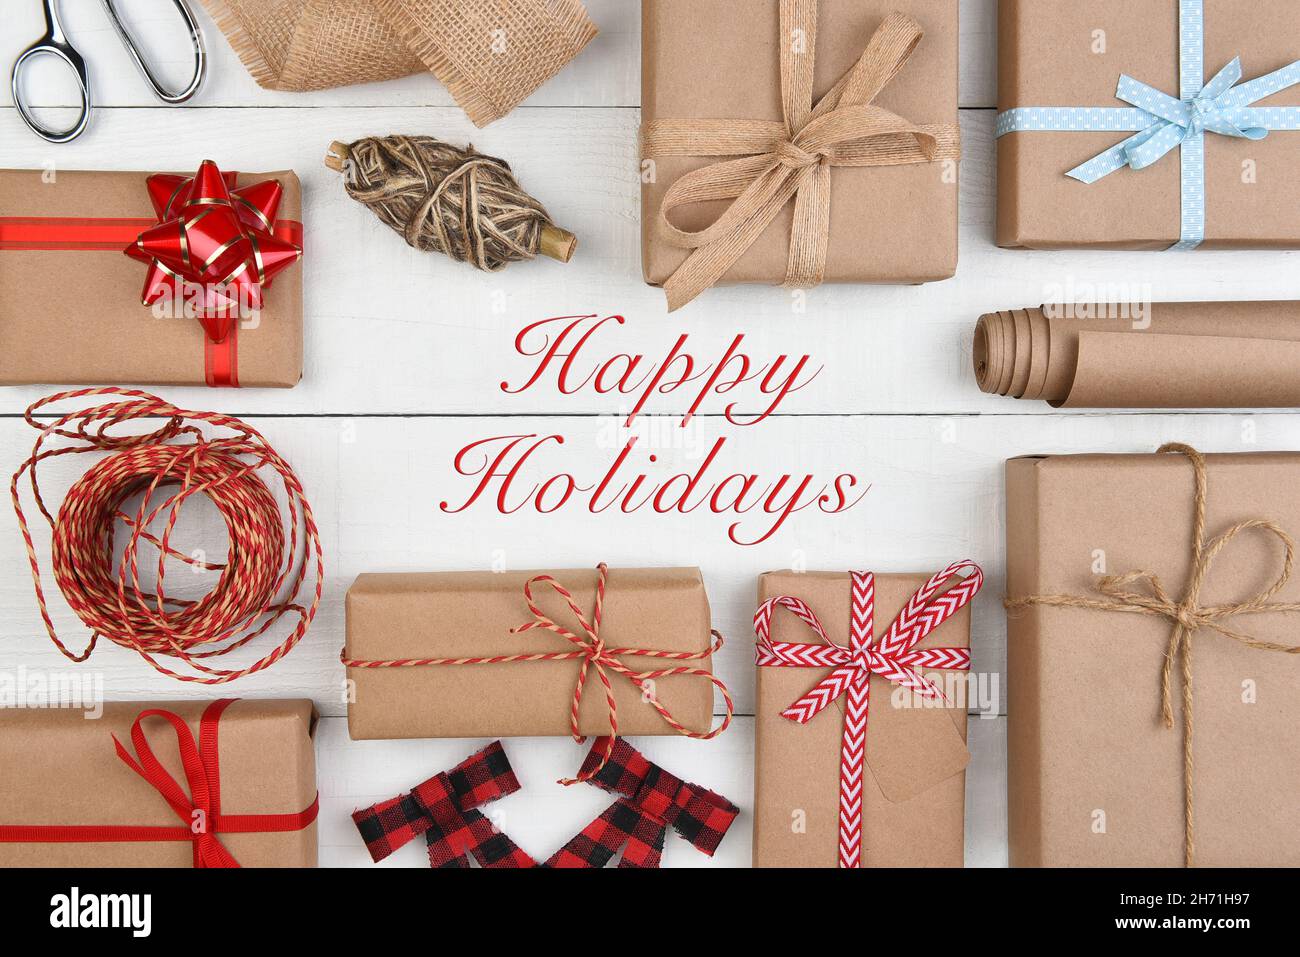 Plat de Noël - papier kraft brun Uni enveloppé de cadeaux et d'accessoires avec Happy Holiday au milieu. Banque D'Images